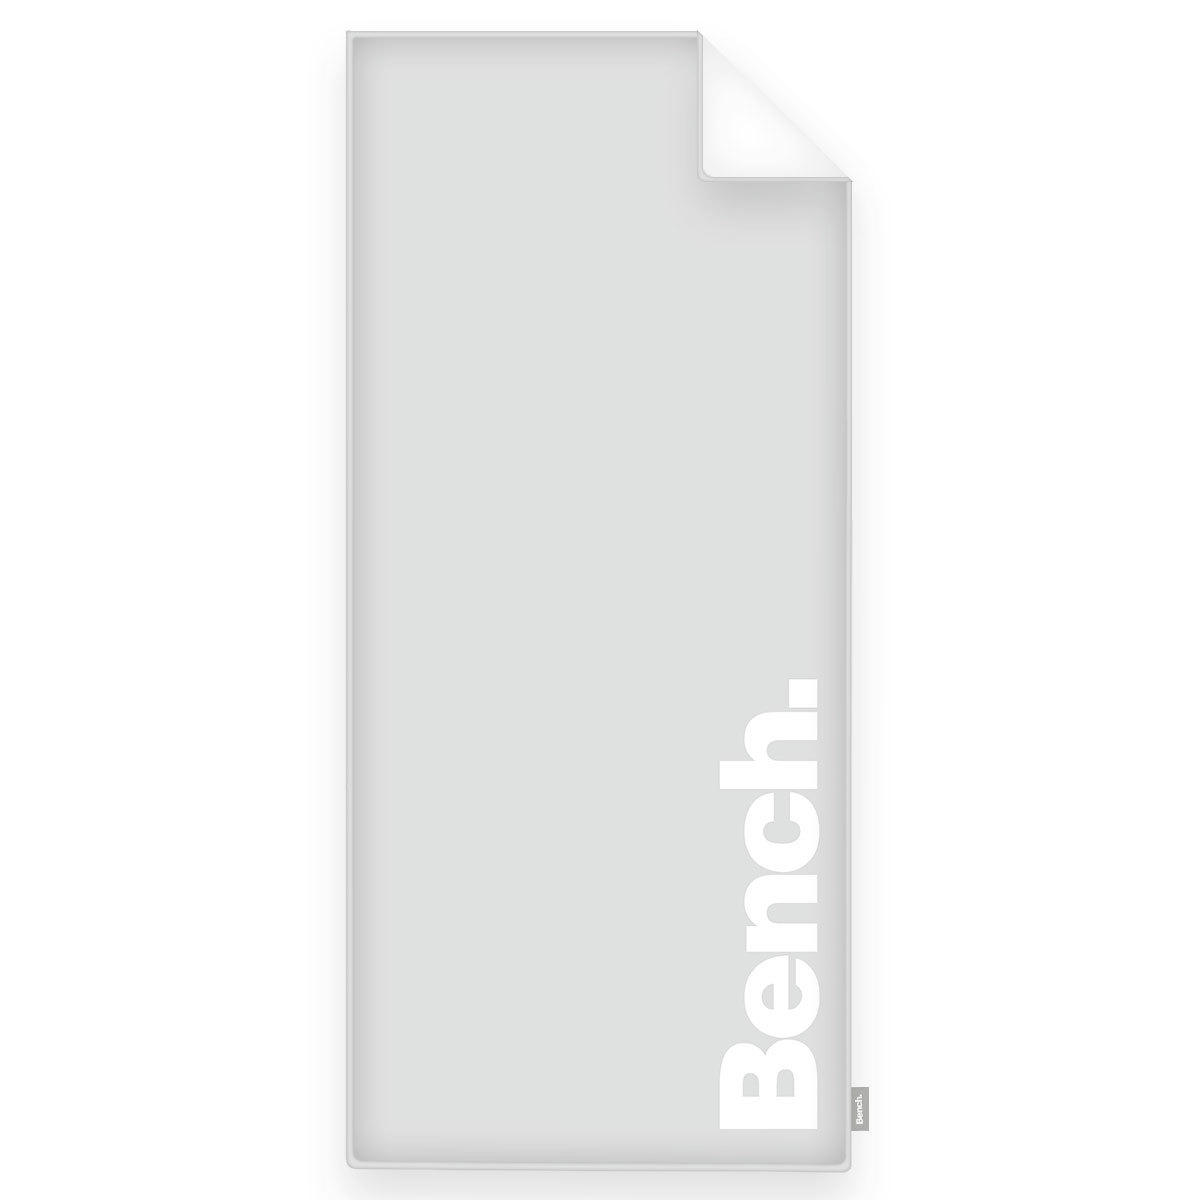 STRANDTUCH 80/180 cm  - Weiß/Grau, KONVENTIONELL, Textil (80/180cm) - Bench